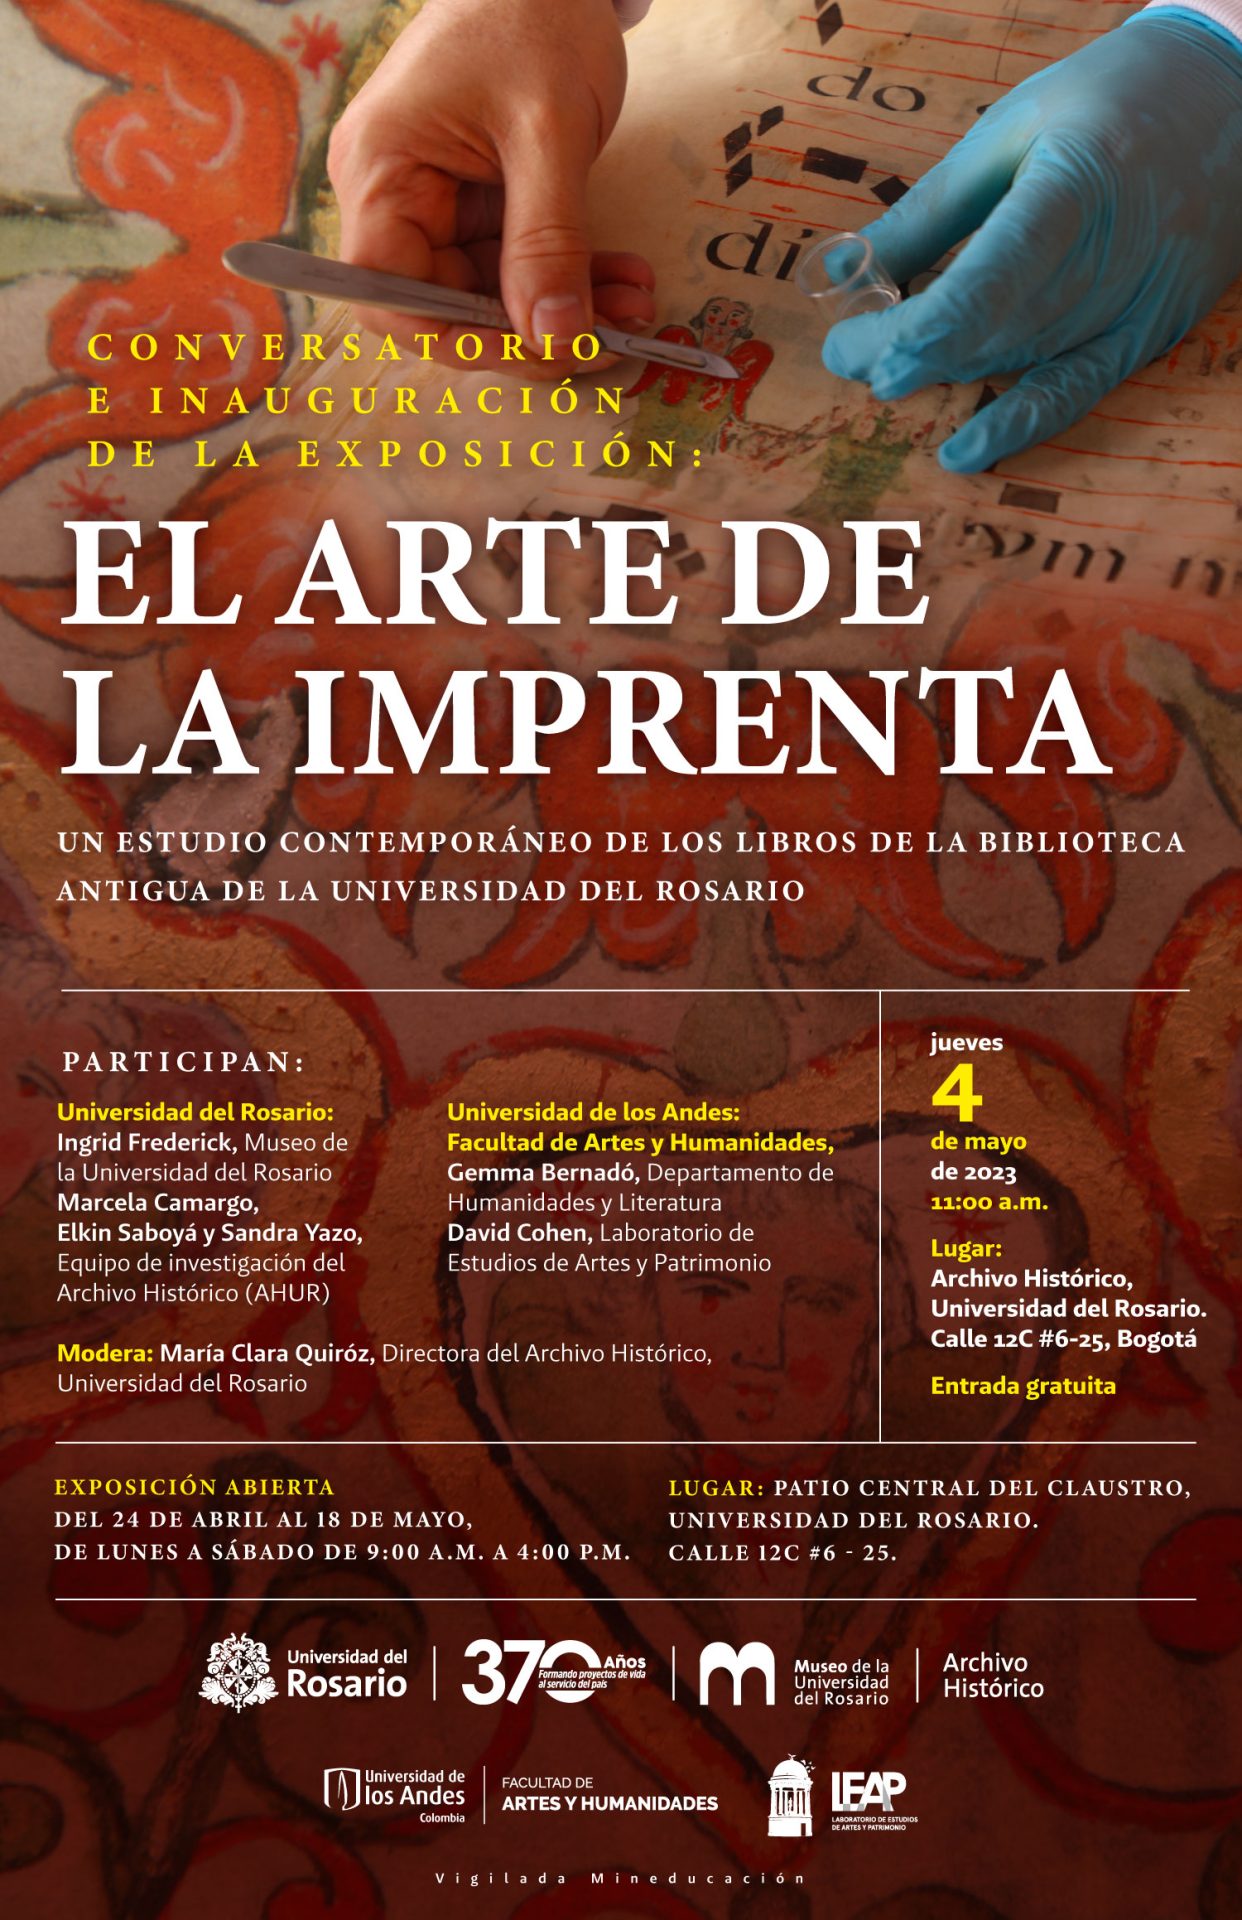 Conservatorio e inauguración de la exposición: El arte de la imprenta por Gemma Bernadó y David Cohen, profesores de la Universidad de los Andes